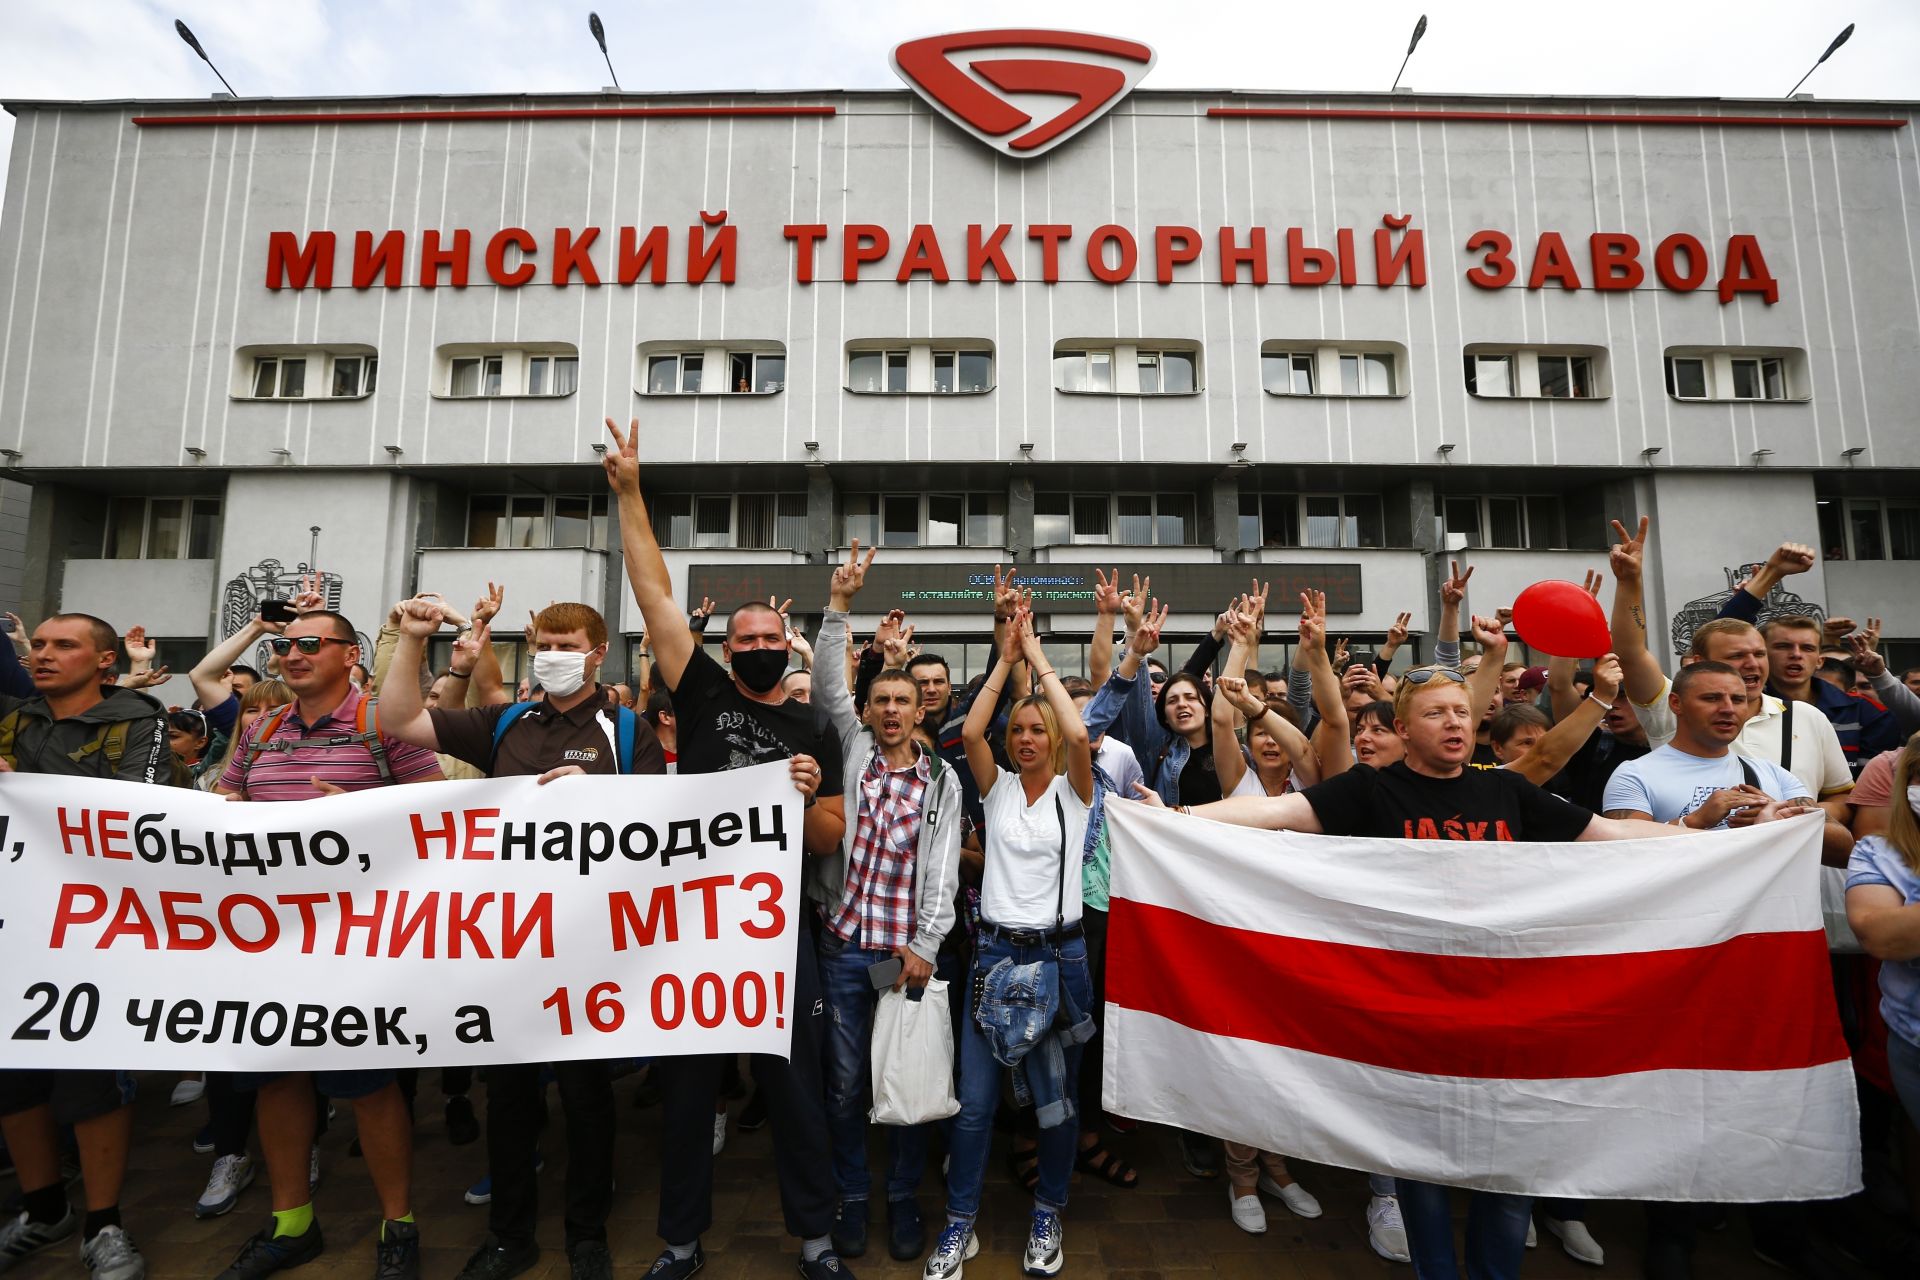 Работниците държат банер с надпис "ние не сме говеда, не сме овце, ние сме работници на МТЗ, не сме 20 души, ние сме 16 000", докато те маршират по време на митинг край Минския завод за трактори